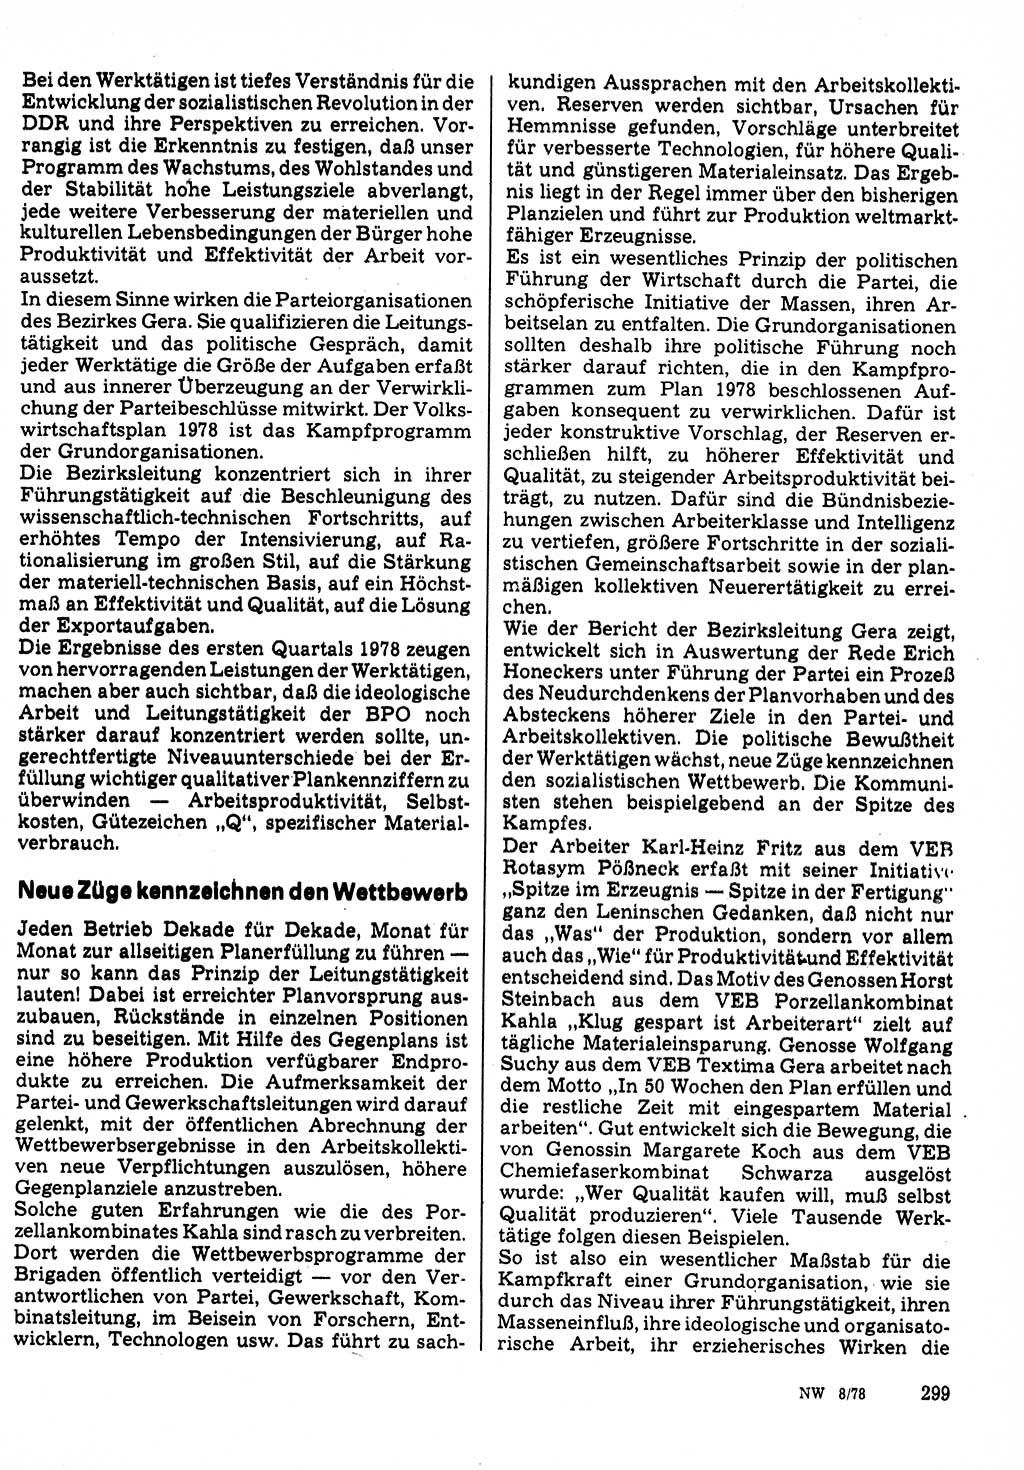 Neuer Weg (NW), Organ des Zentralkomitees (ZK) der SED (Sozialistische Einheitspartei Deutschlands) für Fragen des Parteilebens, 33. Jahrgang [Deutsche Demokratische Republik (DDR)] 1978, Seite 299 (NW ZK SED DDR 1978, S. 299)